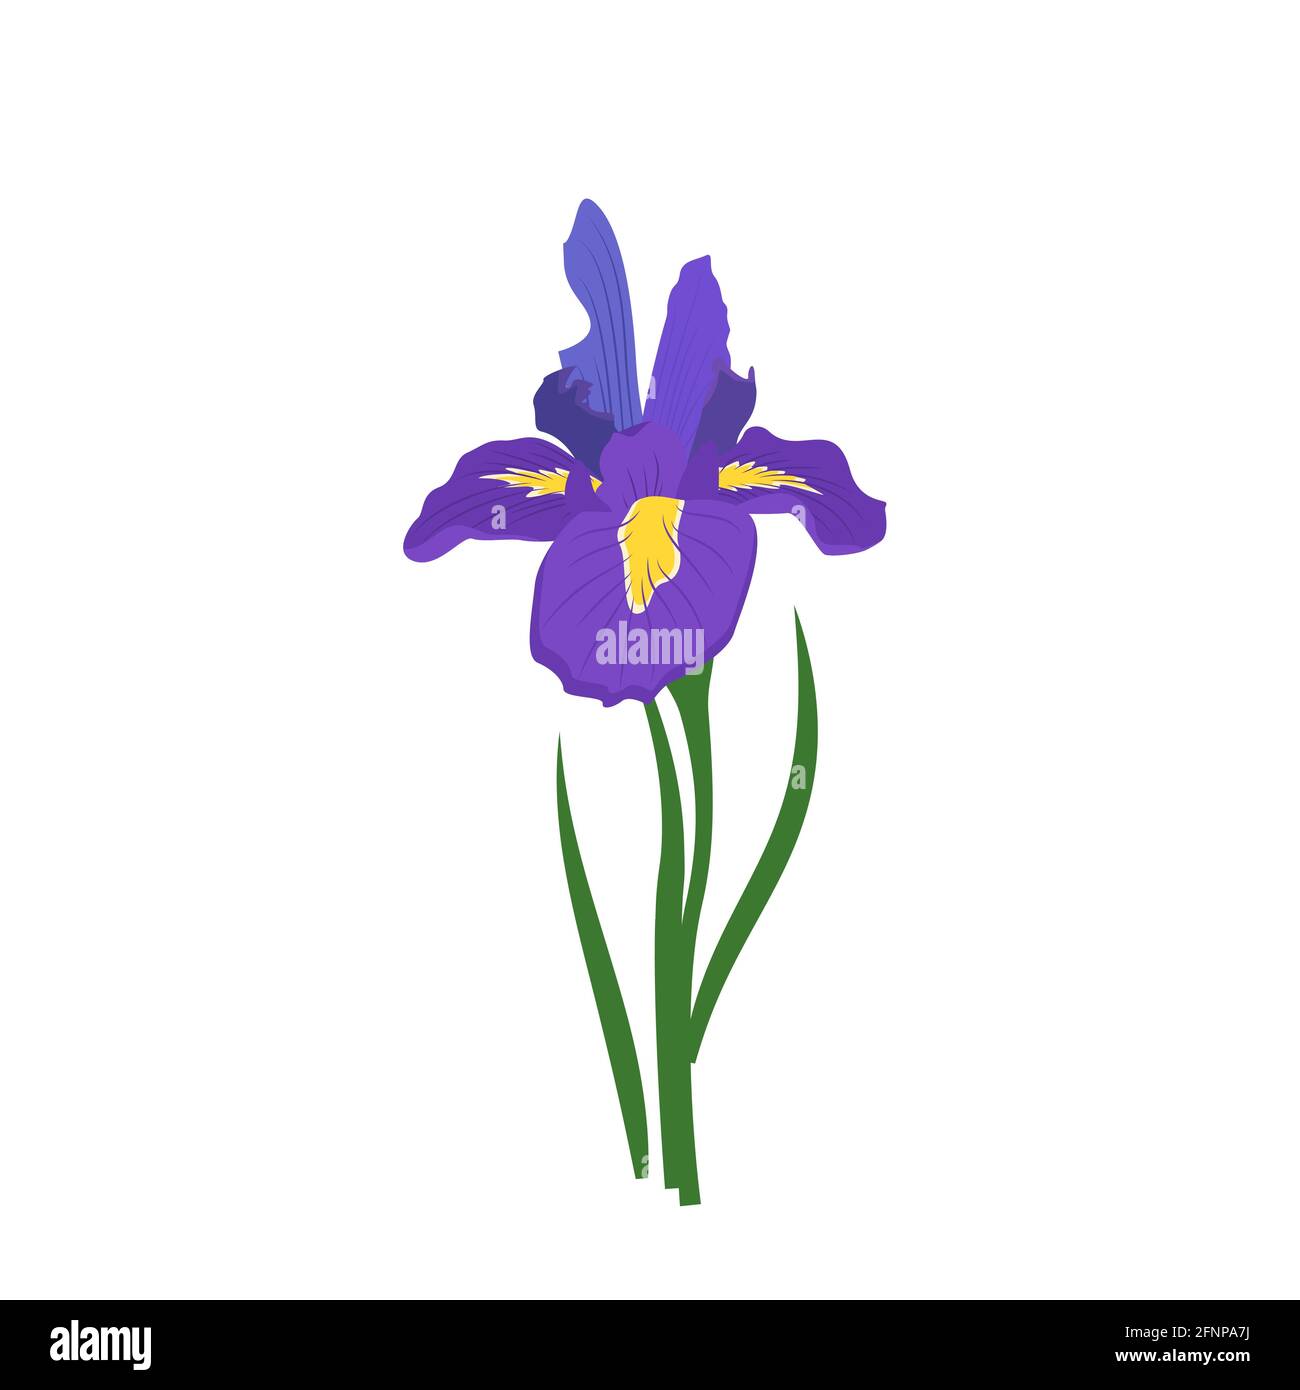 Violette Irisblume mit leuchtend gelben Elementen auf den Blütenblättern. Frühlings- oder Sommerpflanze für Hochzeit, Geschenk oder Design Stock Vektor